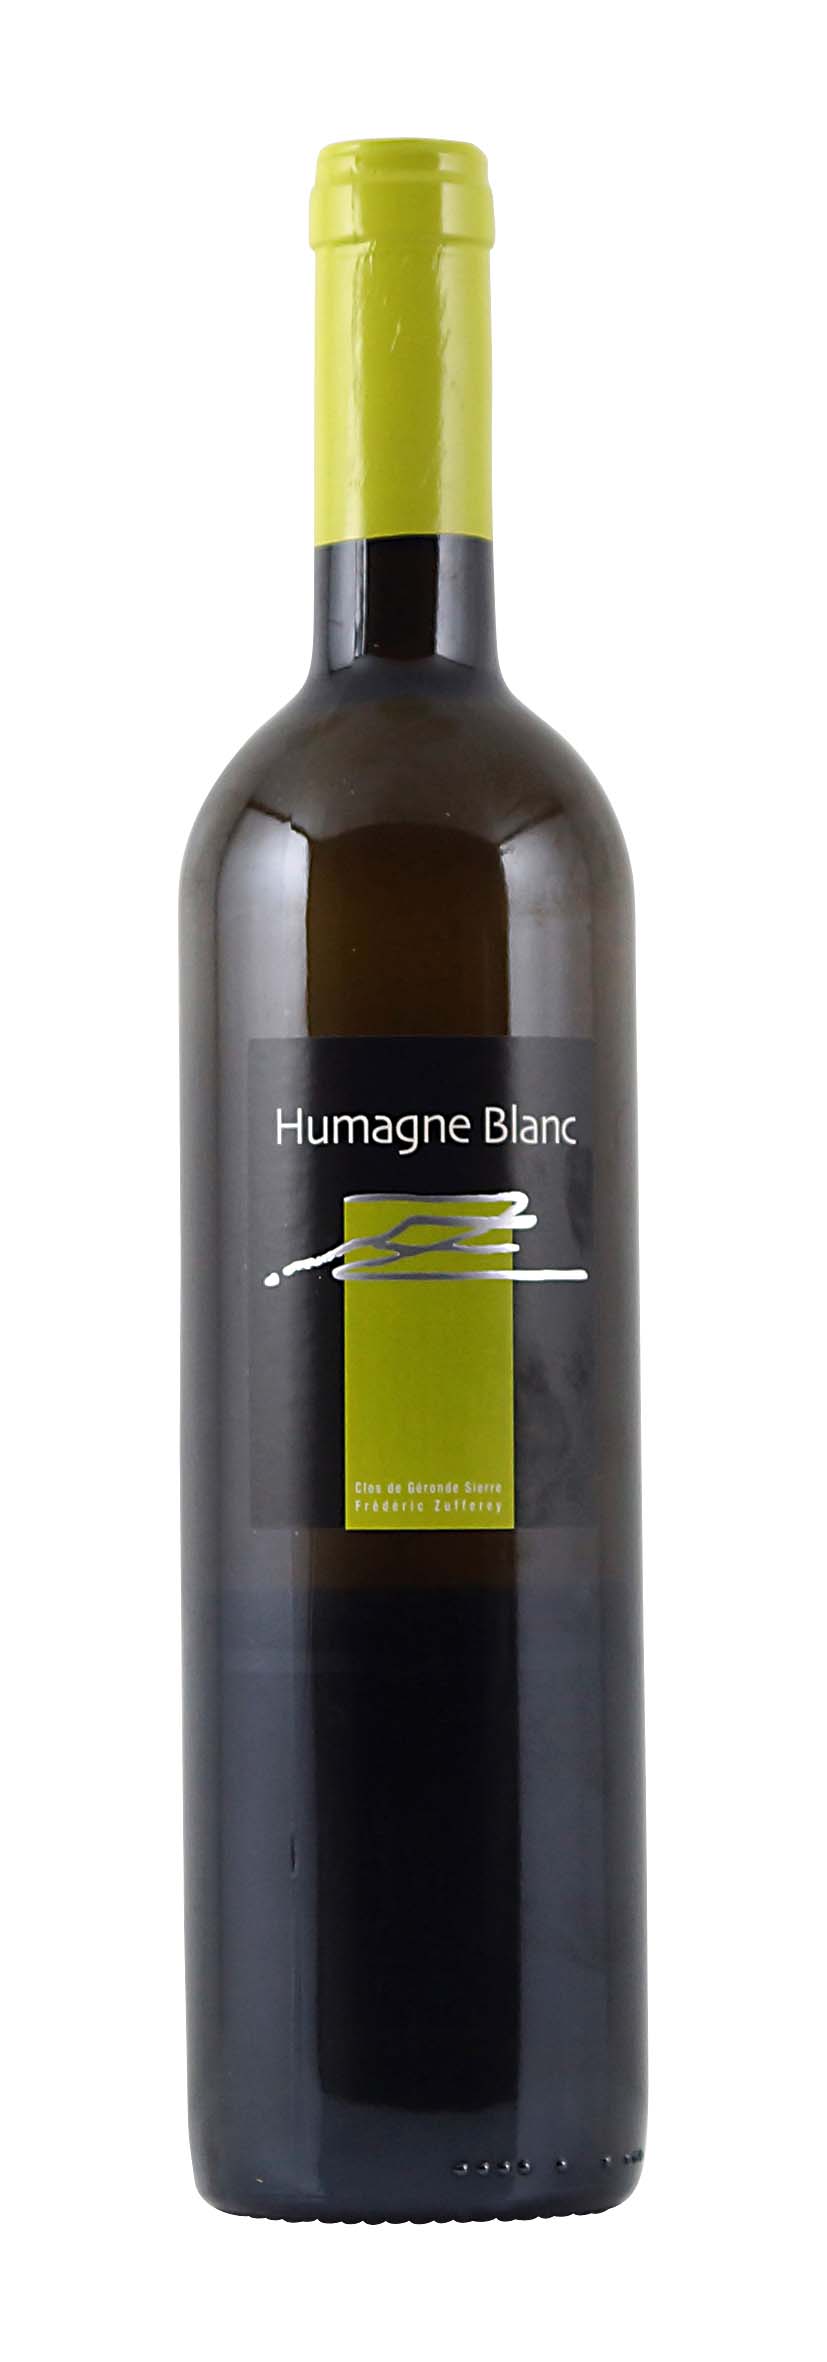 Valais AOC Humagne Blanc 2013